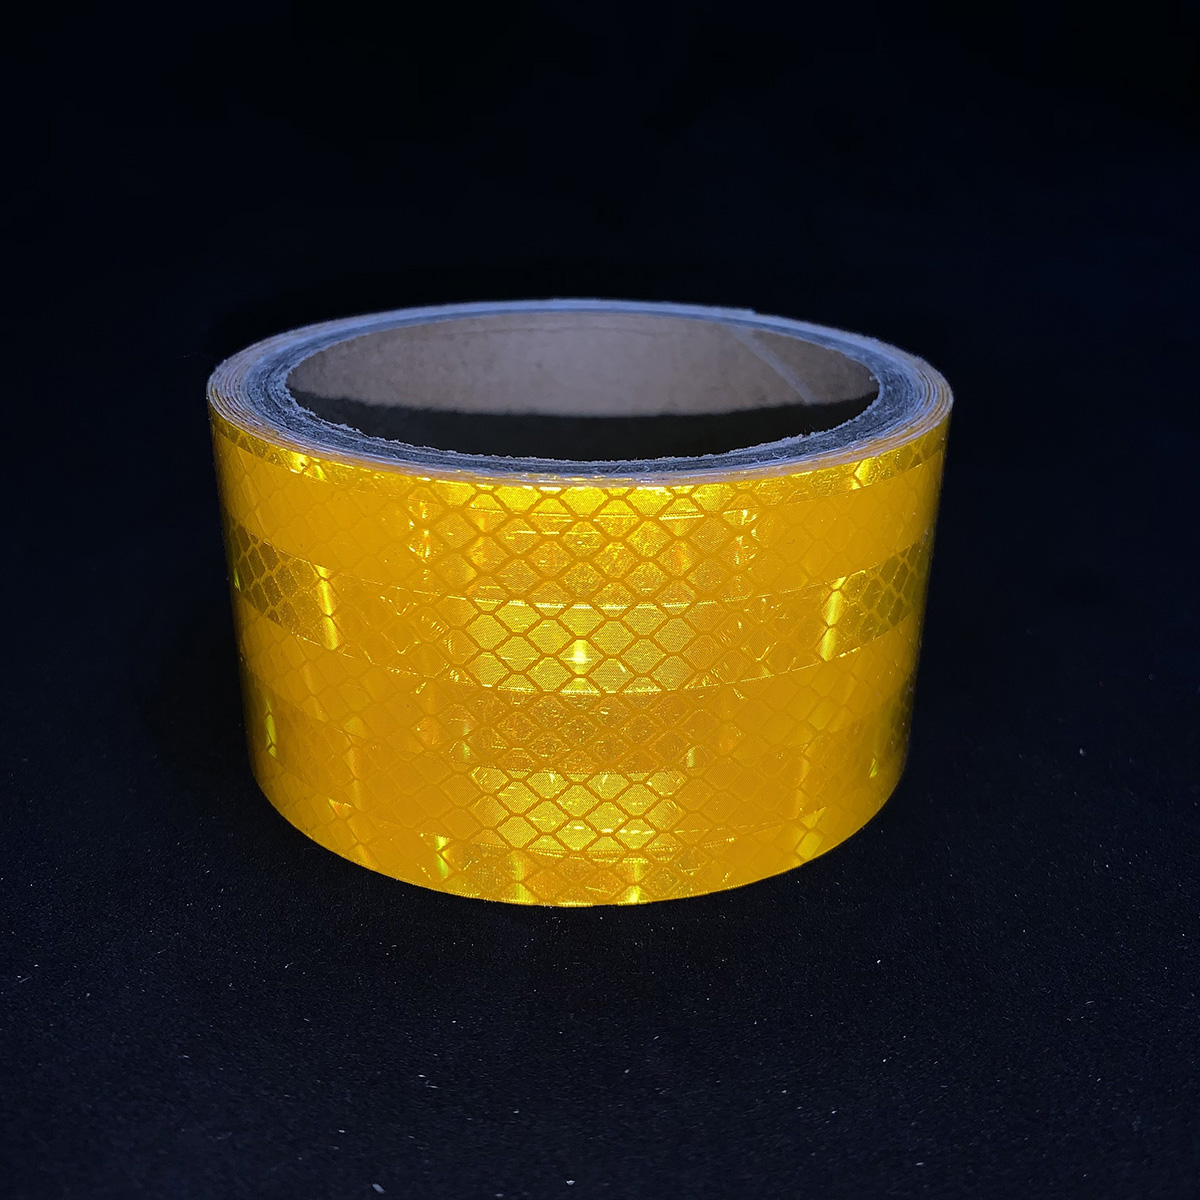 Cinta reflectante microprismática amarilla dorada de 5 cm * 5 m